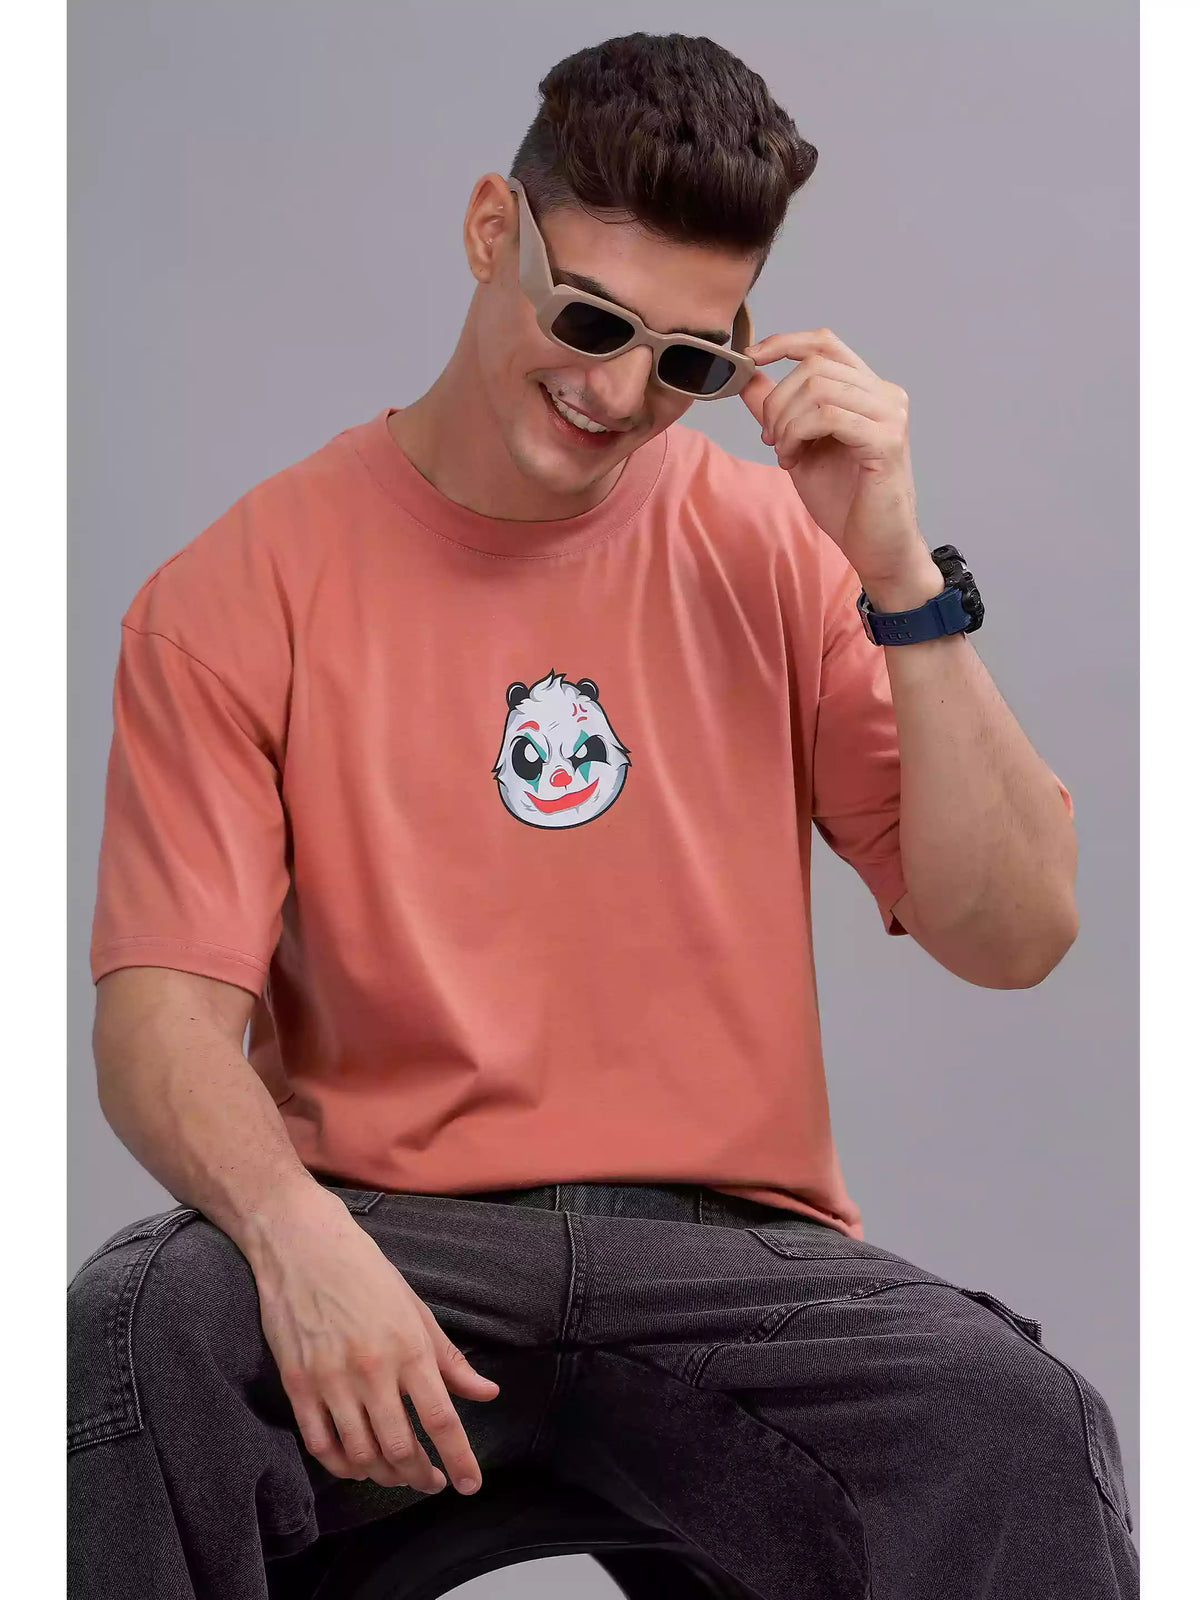 Joker panda - Sukhiaatma Unisex Oversize T-shirt